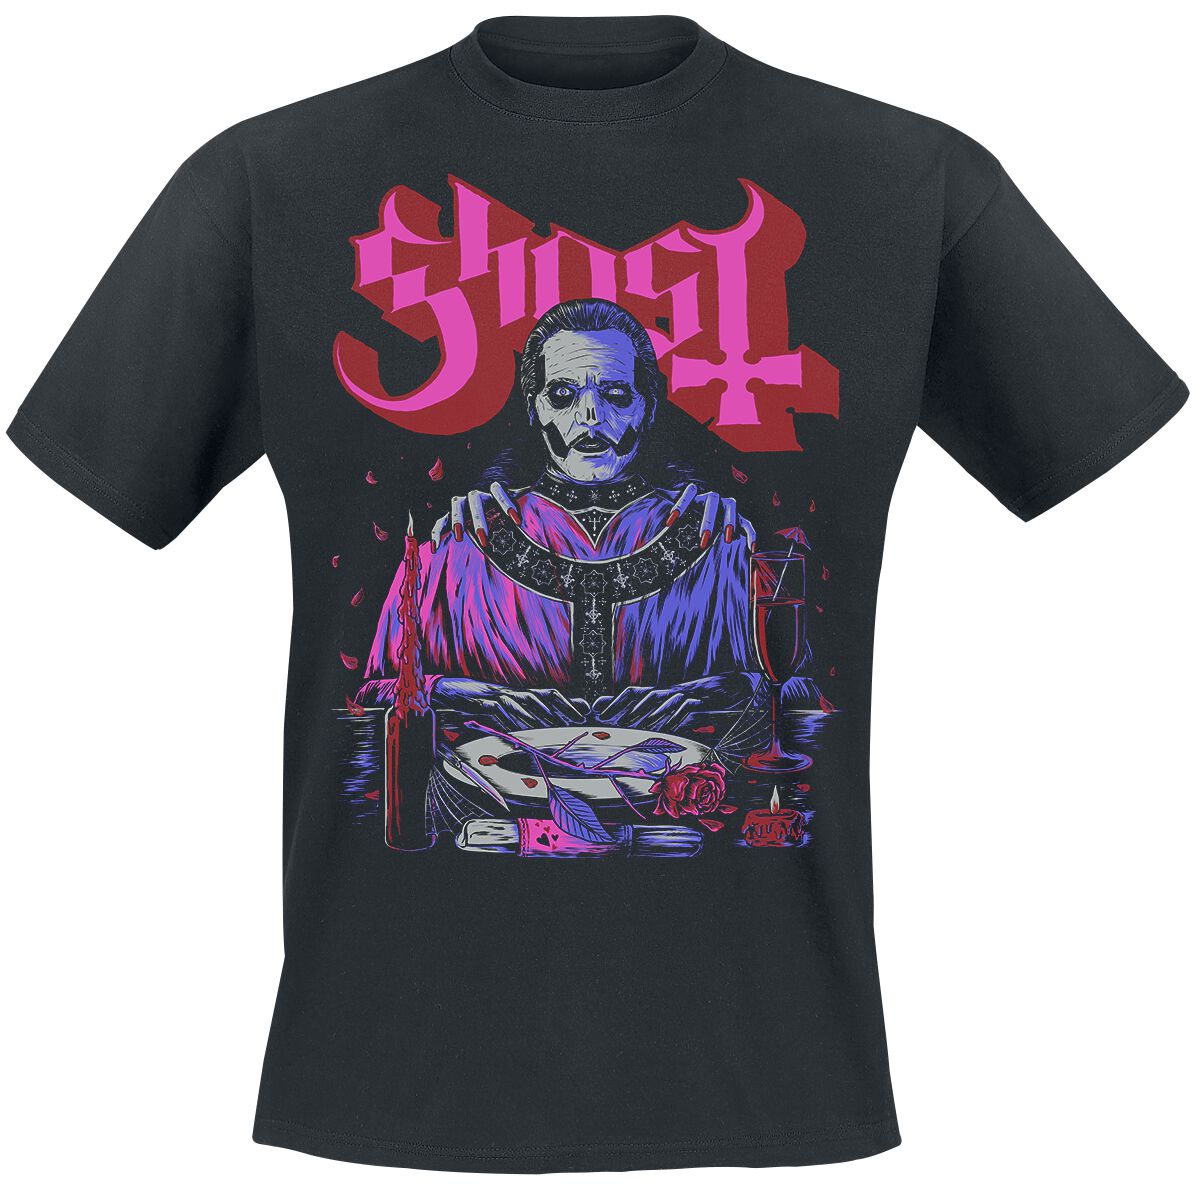 Ghost T-Shirt - Be My Valentines Day - S bis XL - für Männer - Größe L - schwarz  - Lizenziertes Merchandise!